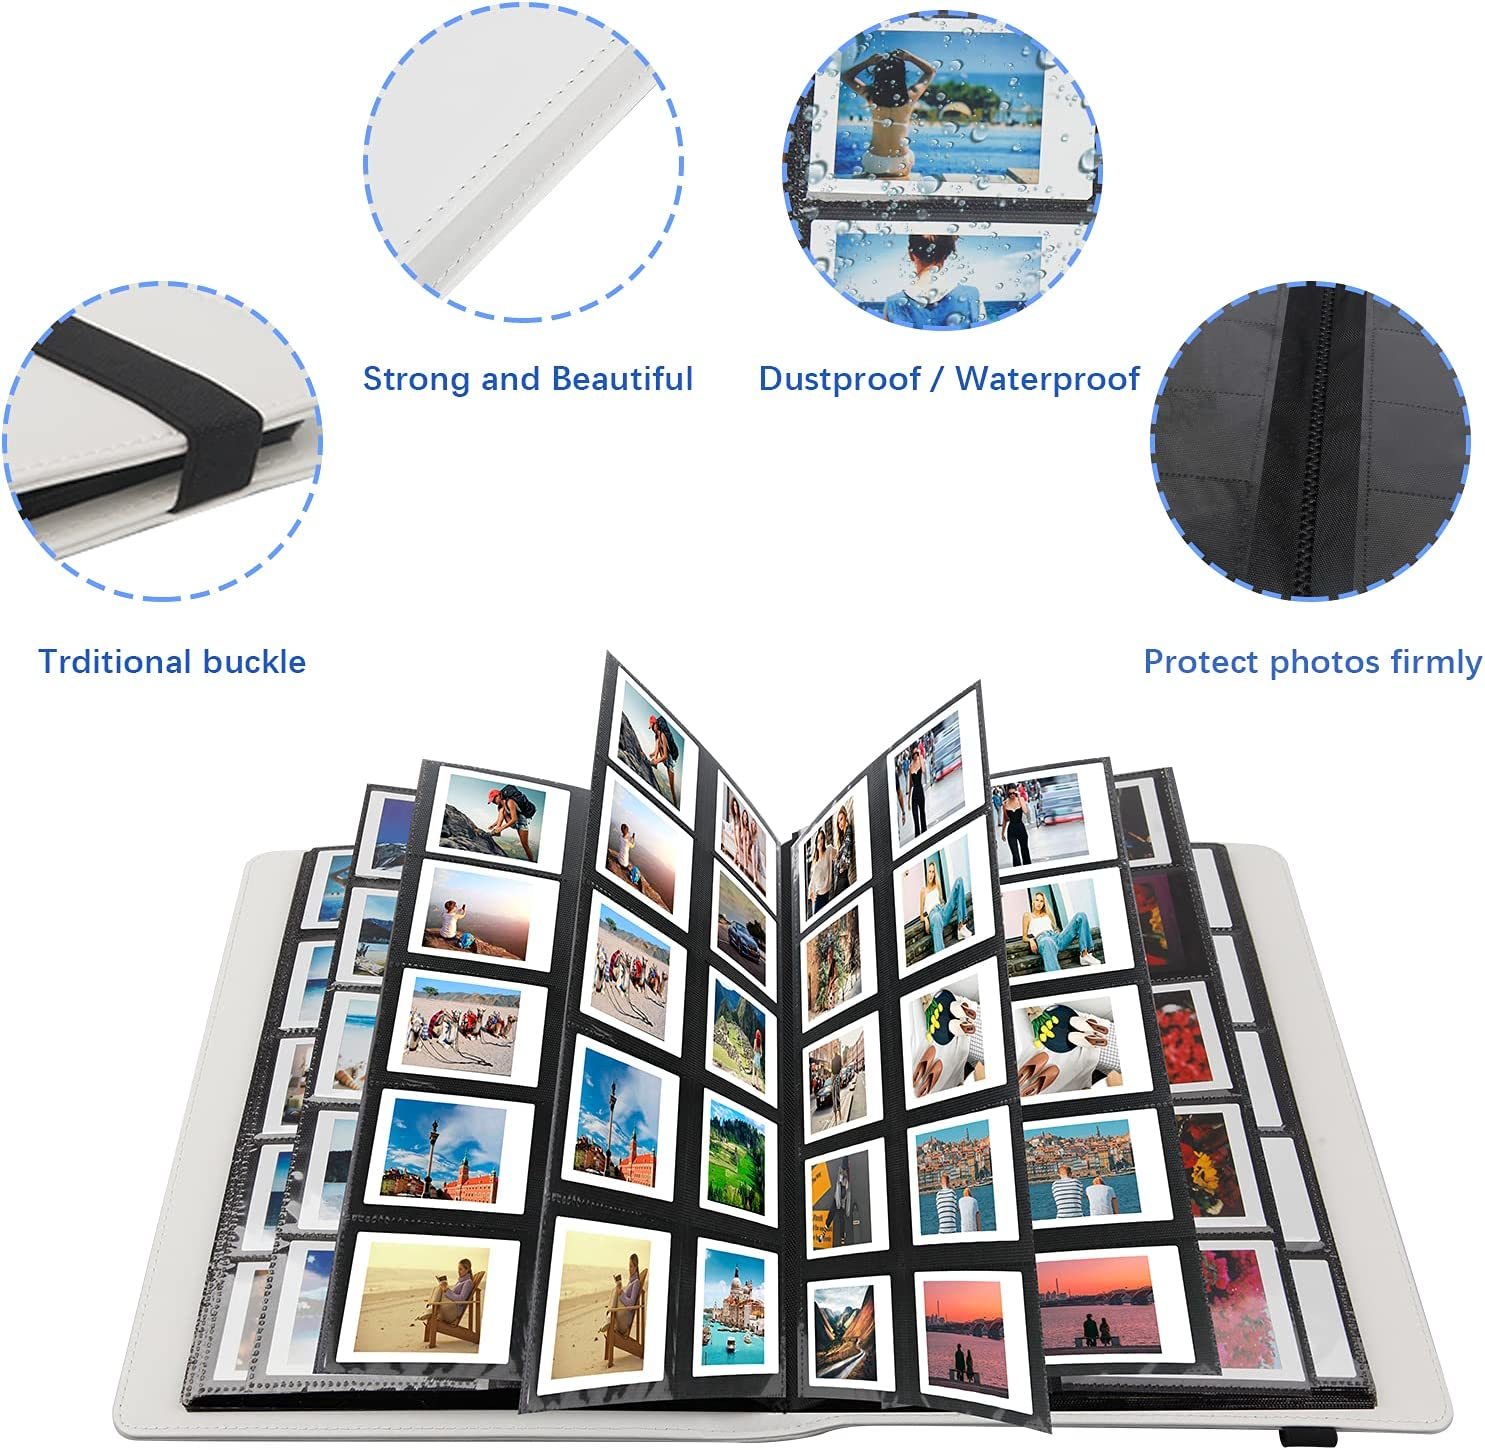 Instax Photo Album, Polaroid Albums 400 Photos for Fujifilm Instax Mini, Black